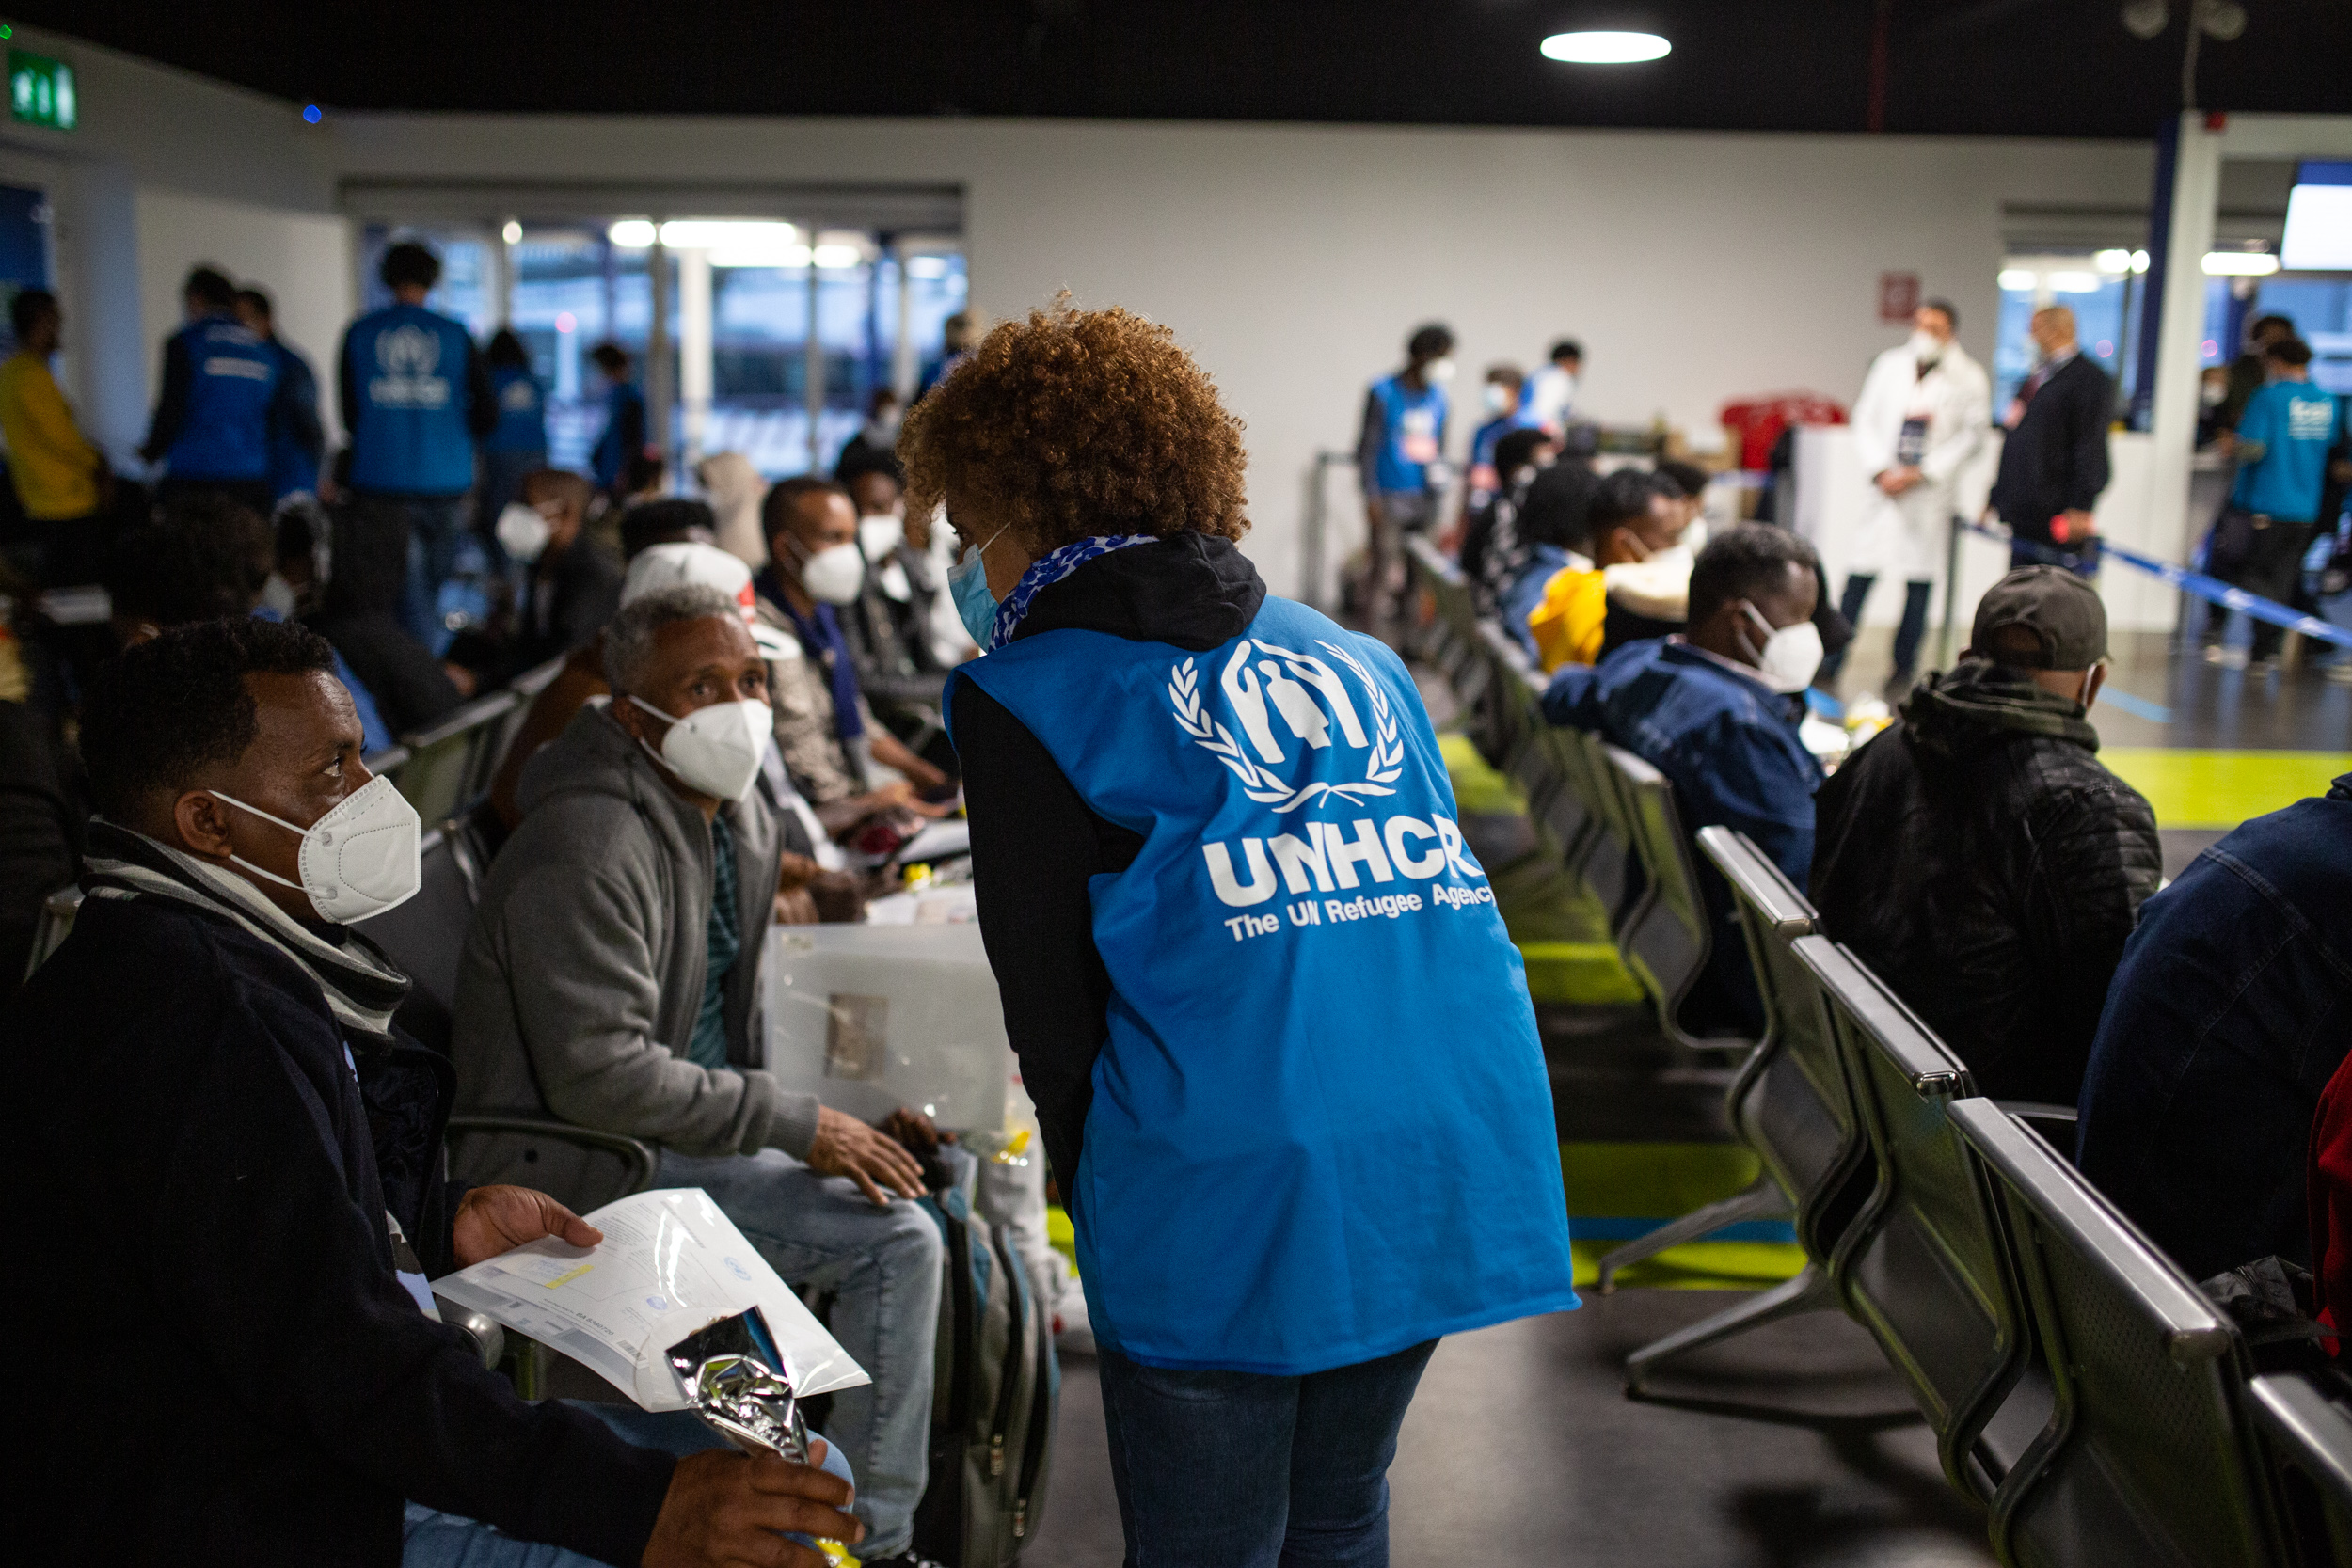 Presentata la carta per l’integrazione dei rifugiati siglata da 6 città con l’UNHCR